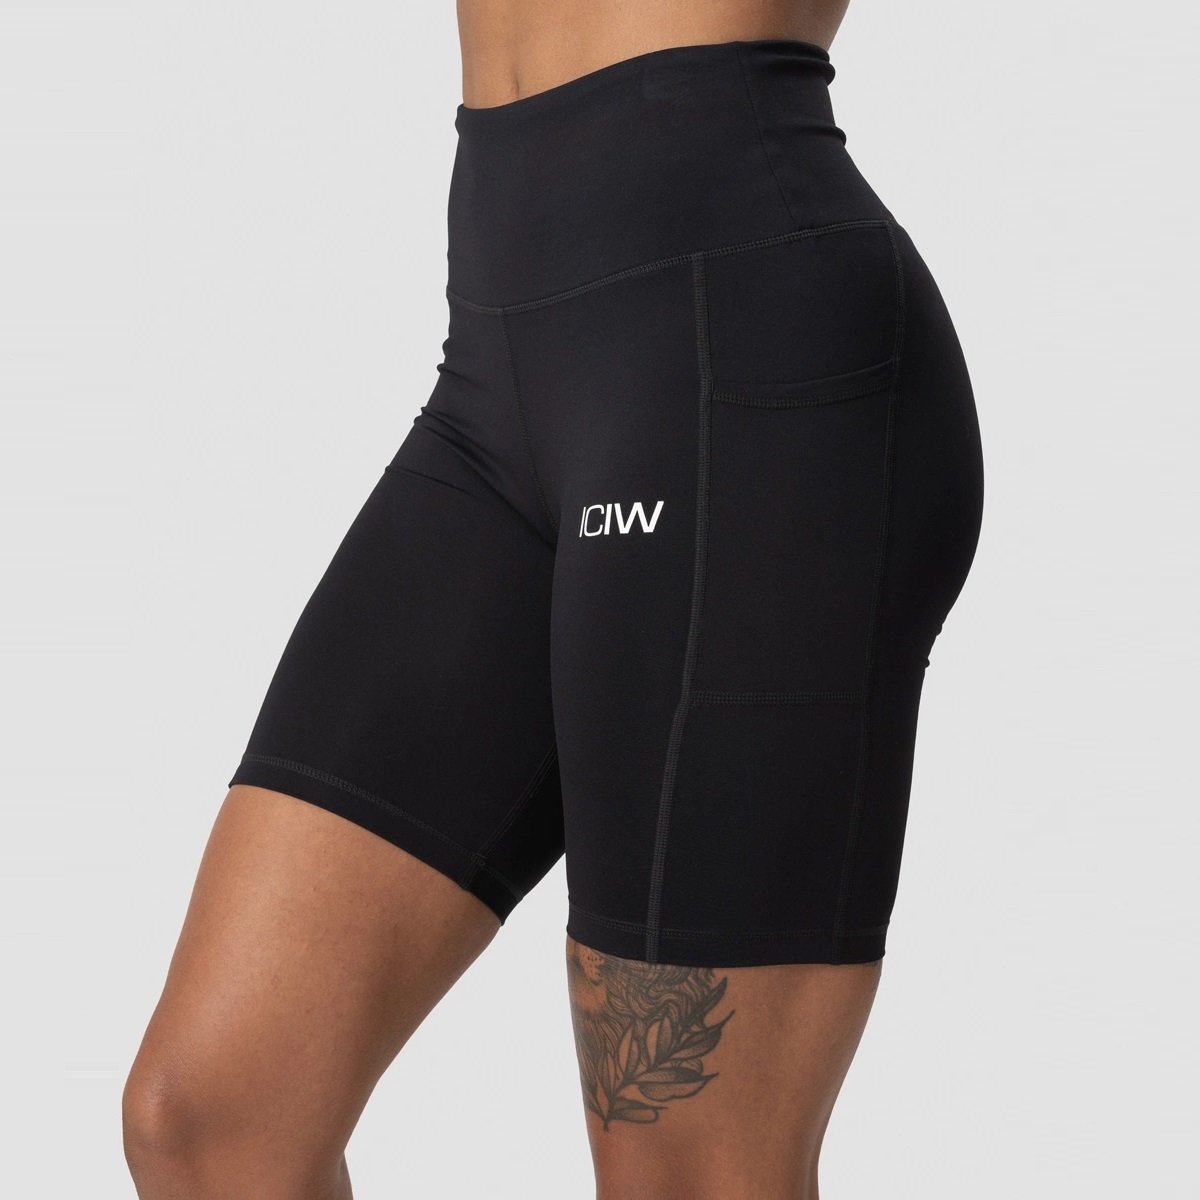 ICANIWILL -Dames Scrunch Pocket Biker Shorts -Zwart